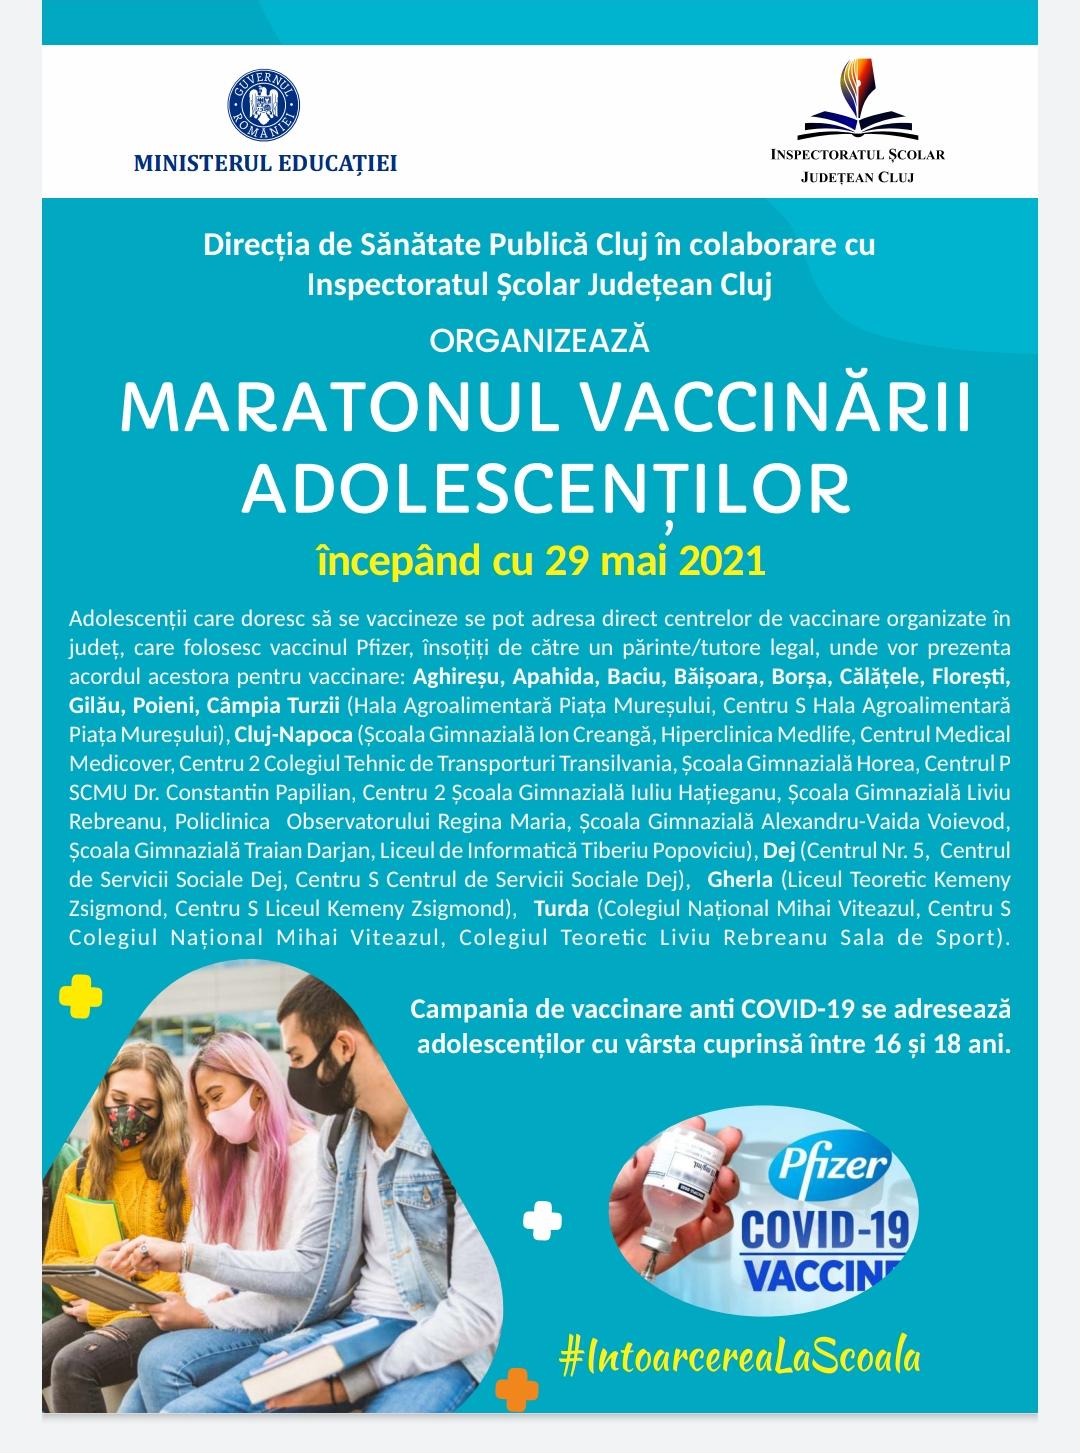 Maratonul vaccinarii adolescentilor incepand cu 29 mai 2021